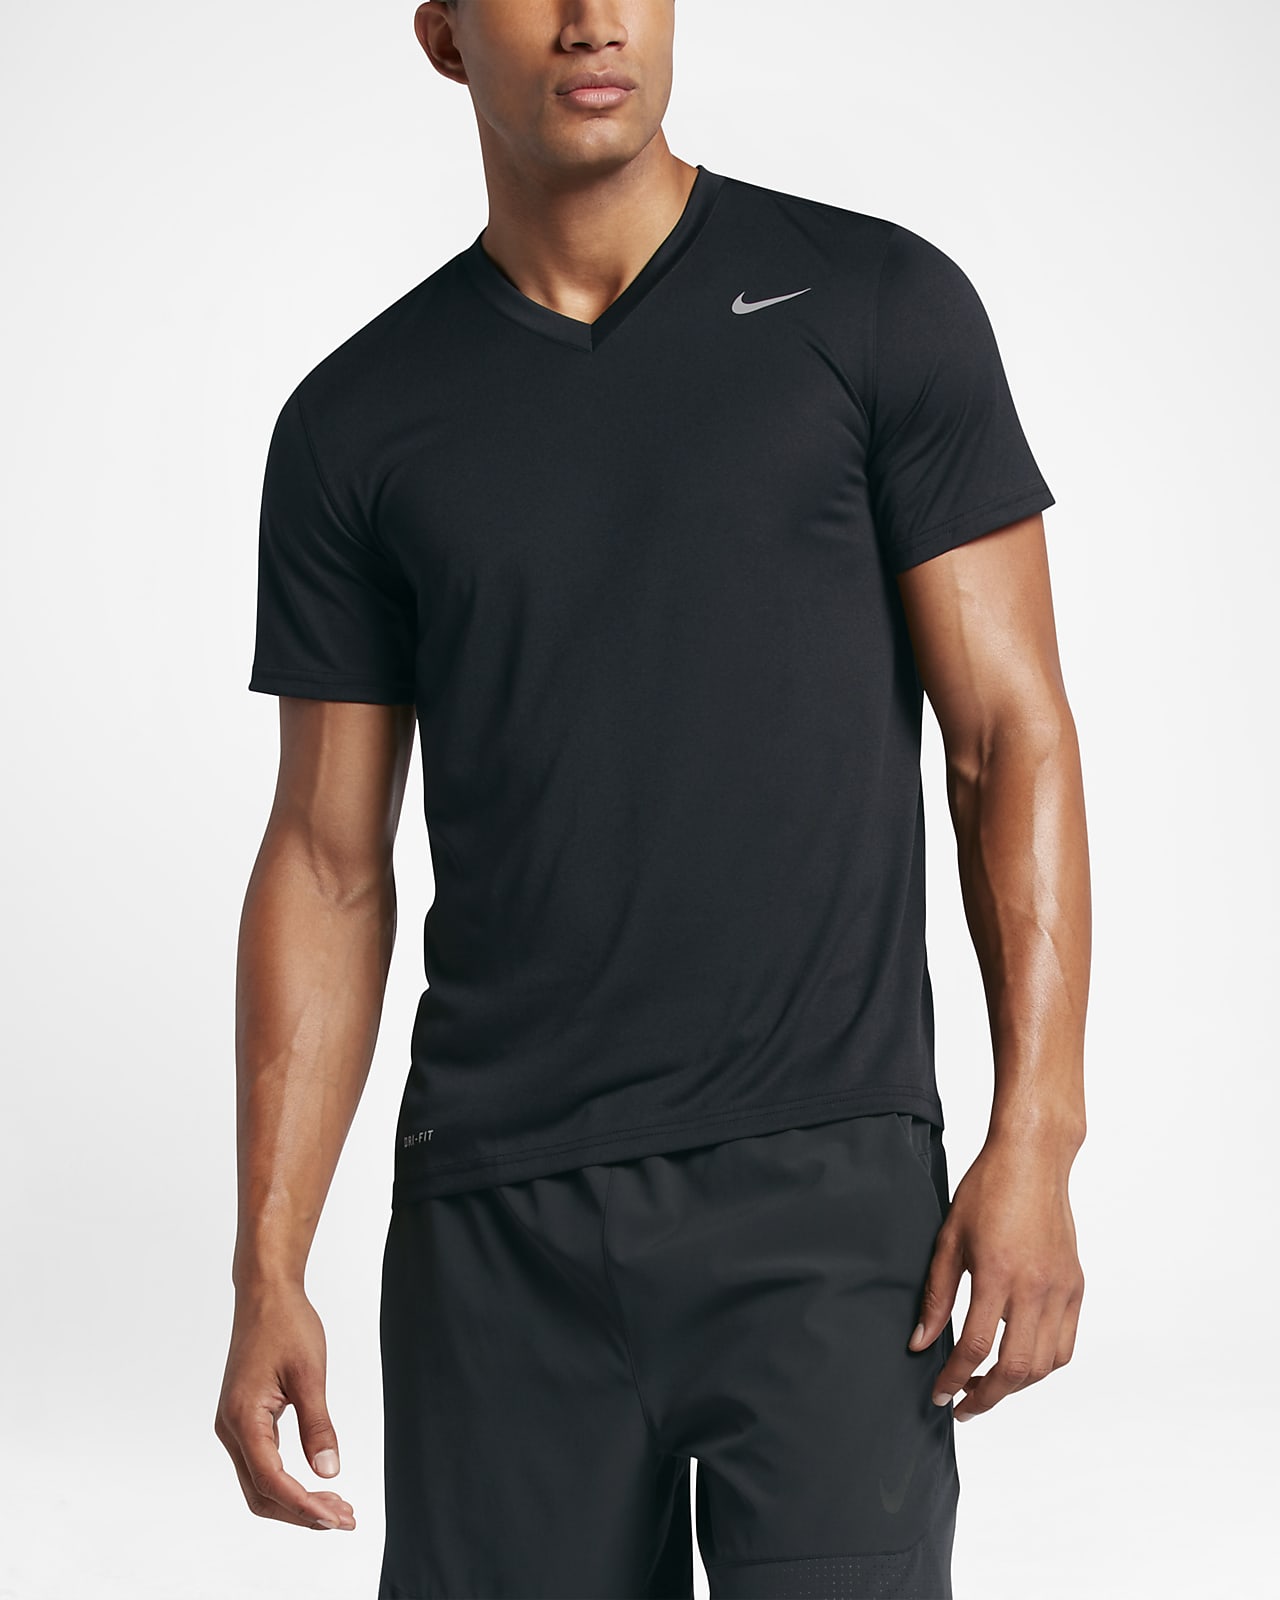 Camiseta de entrenamiento para hombre con cuello en V Nike Legend 2.0. Nike .com